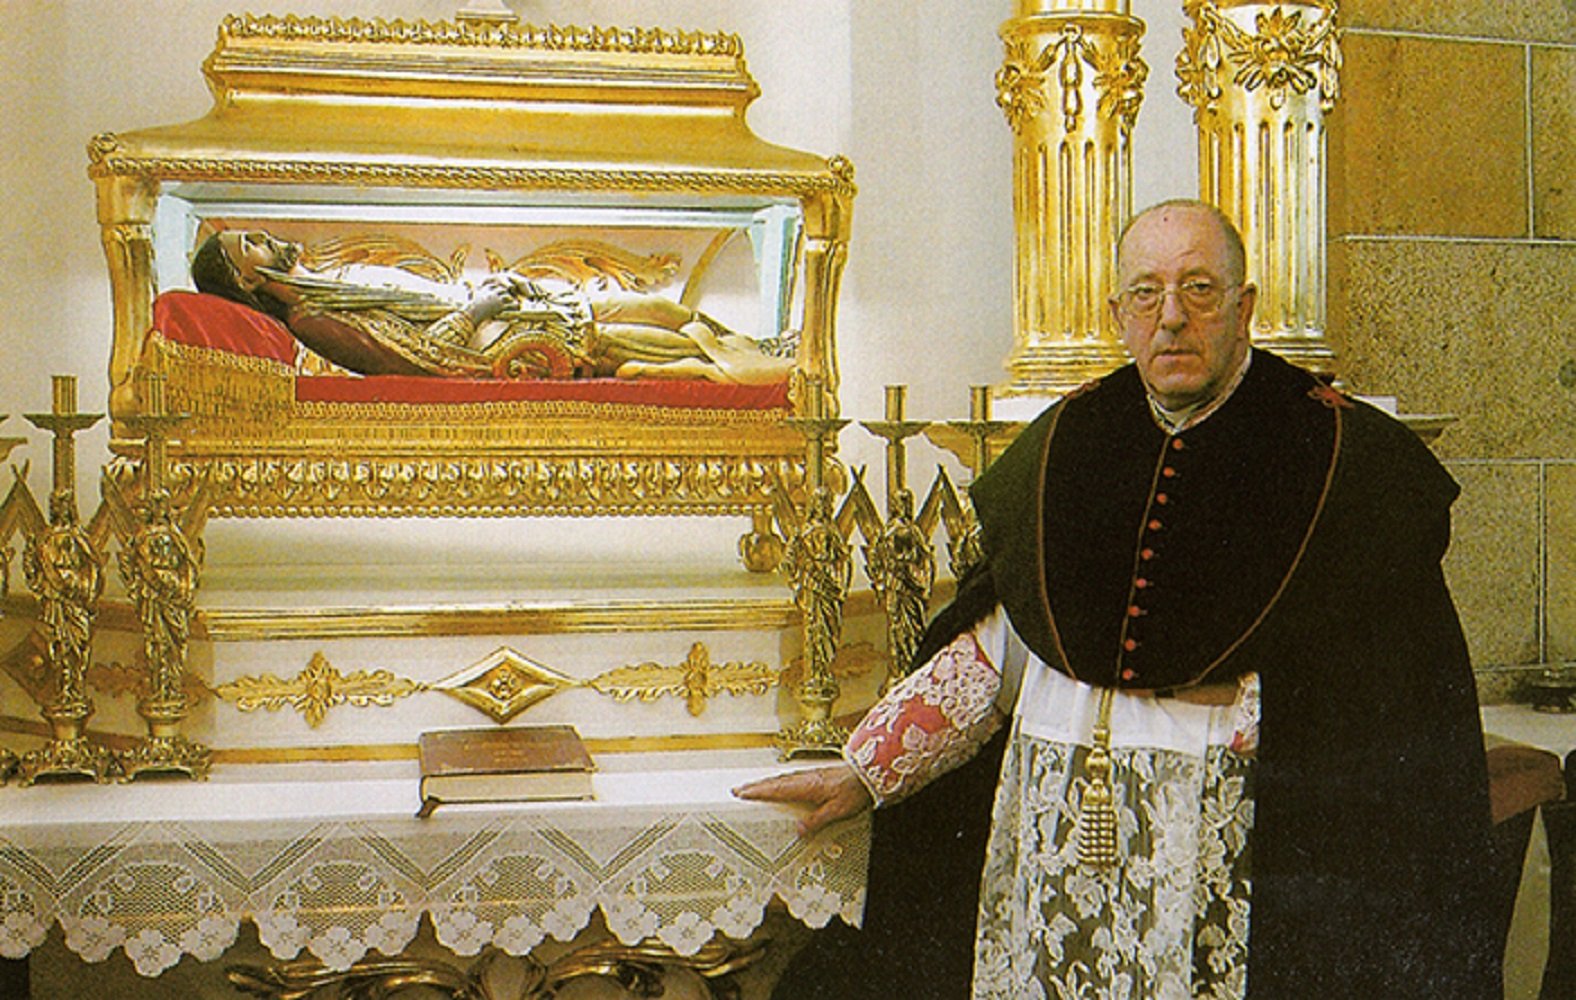 El principal exorcista de España, expulsado de la Iglesia por abusos sexuales